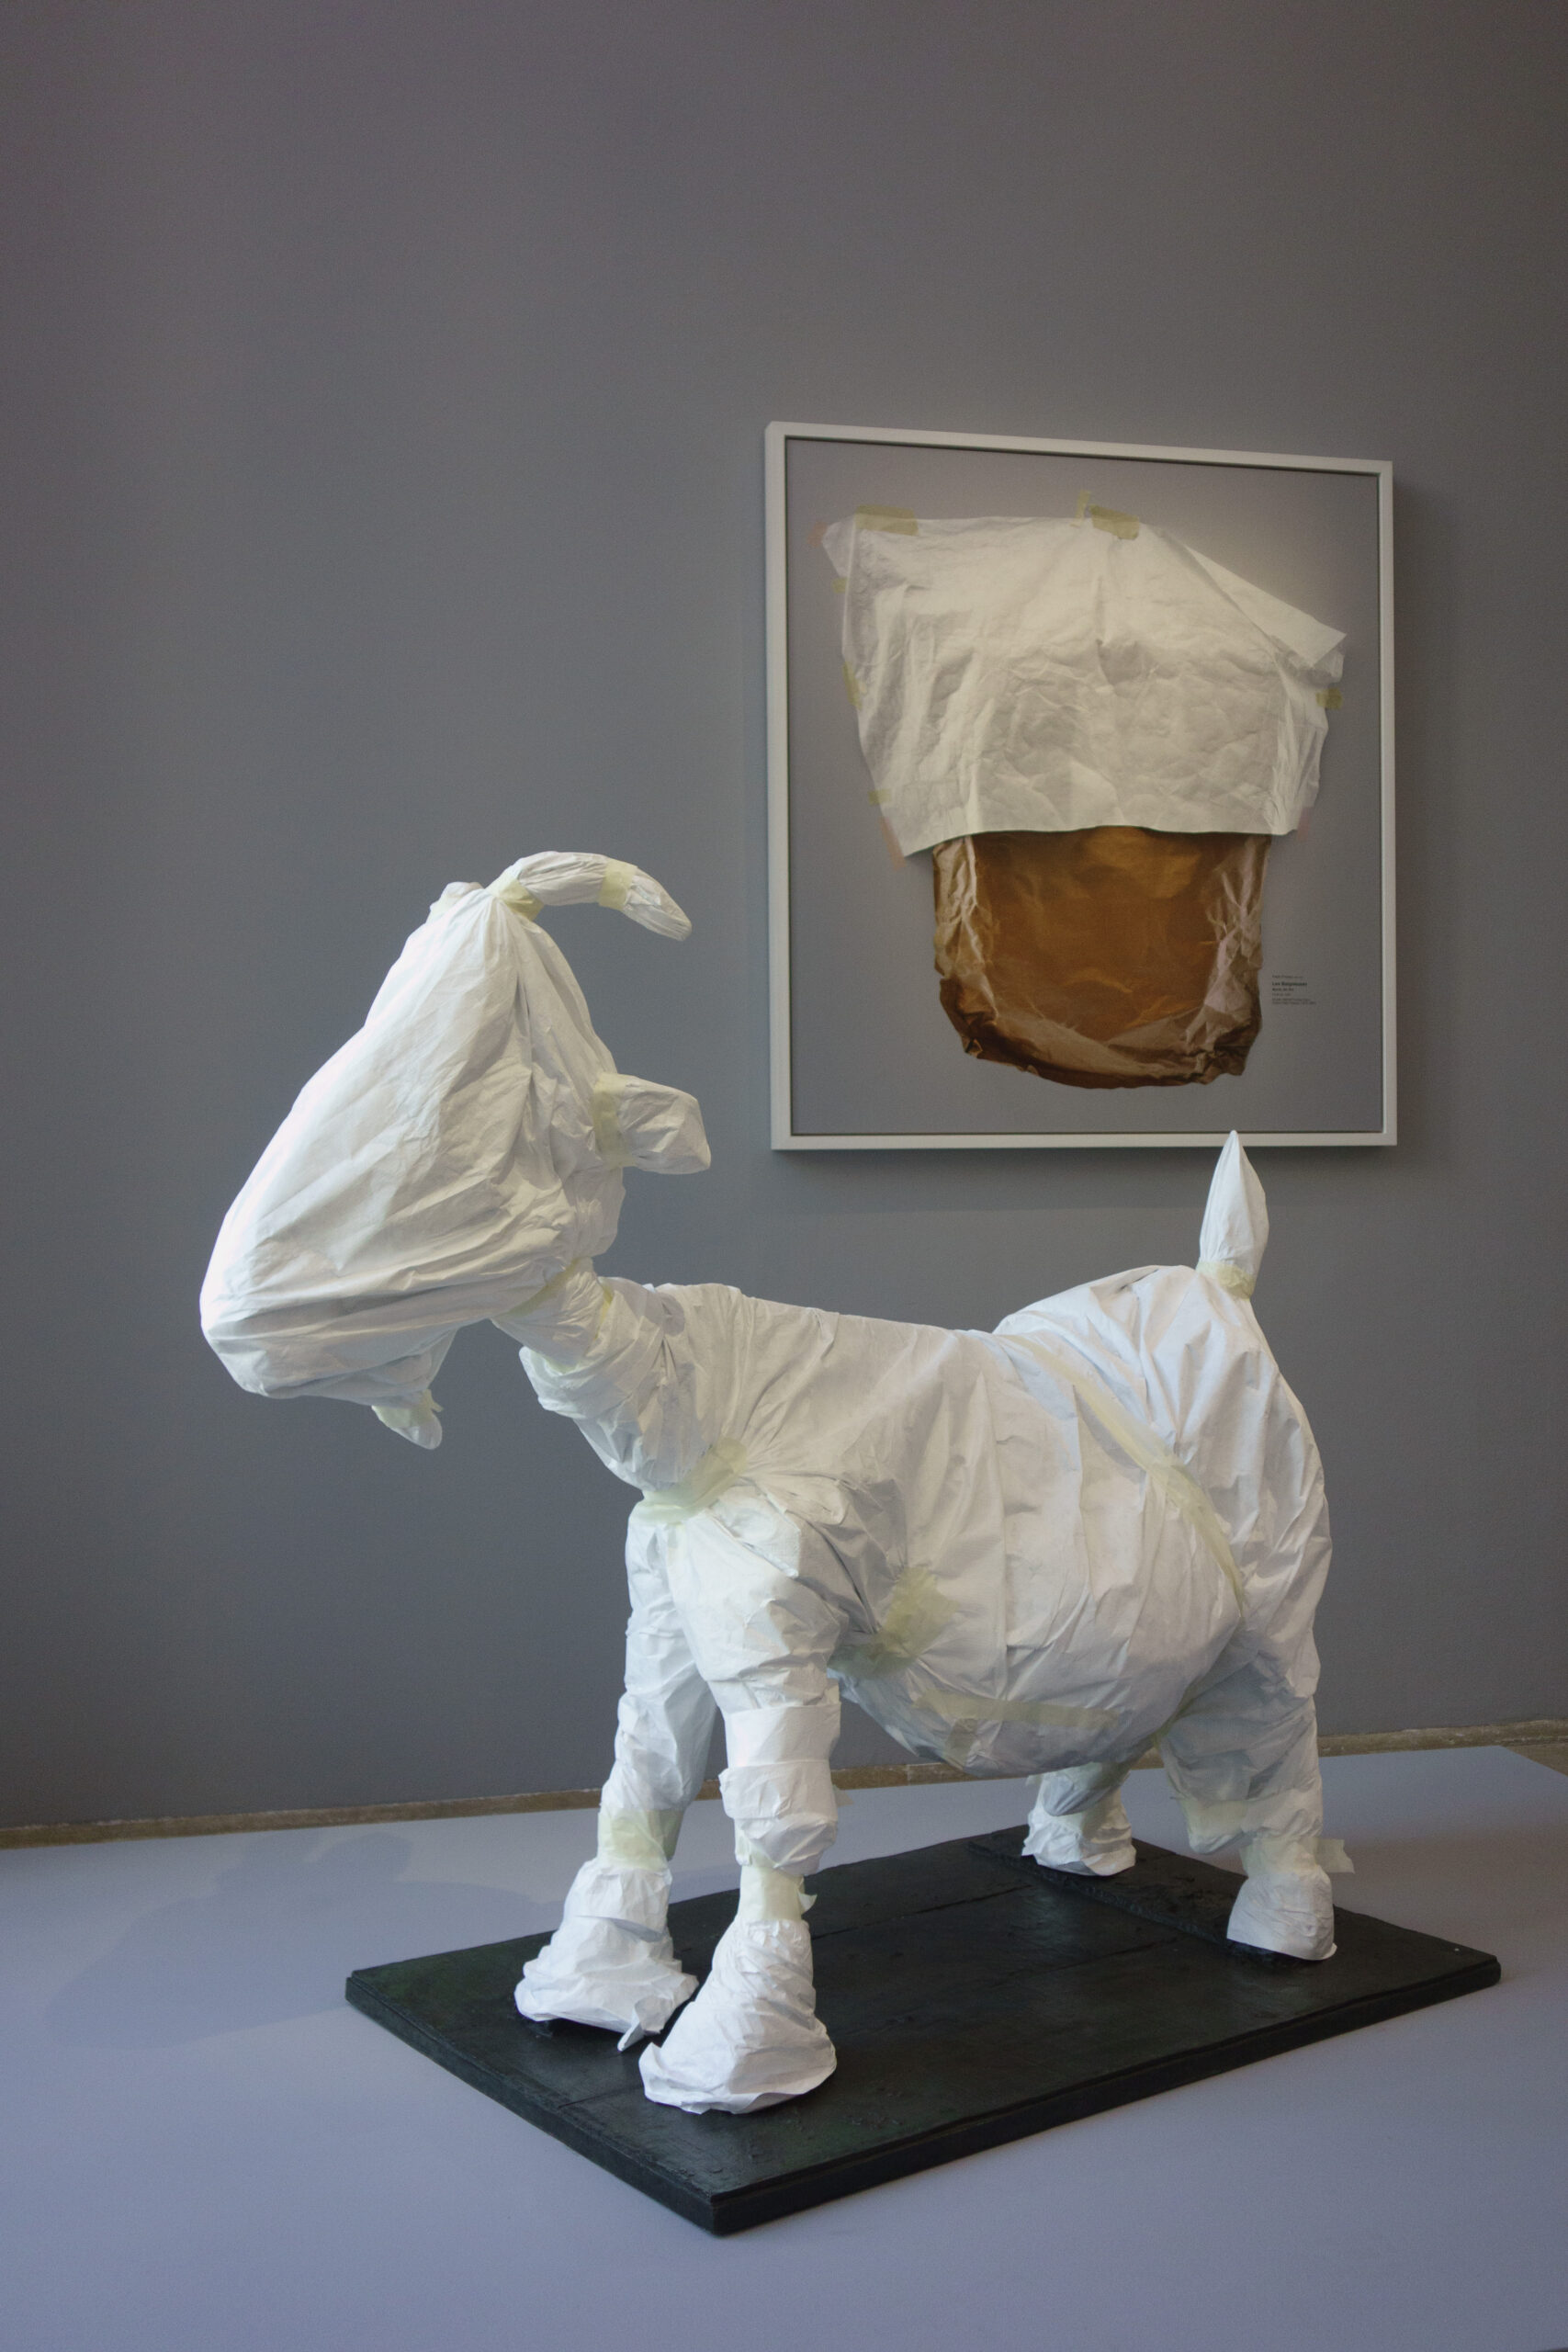 La chèvre de Picasso, version Sophie Calle